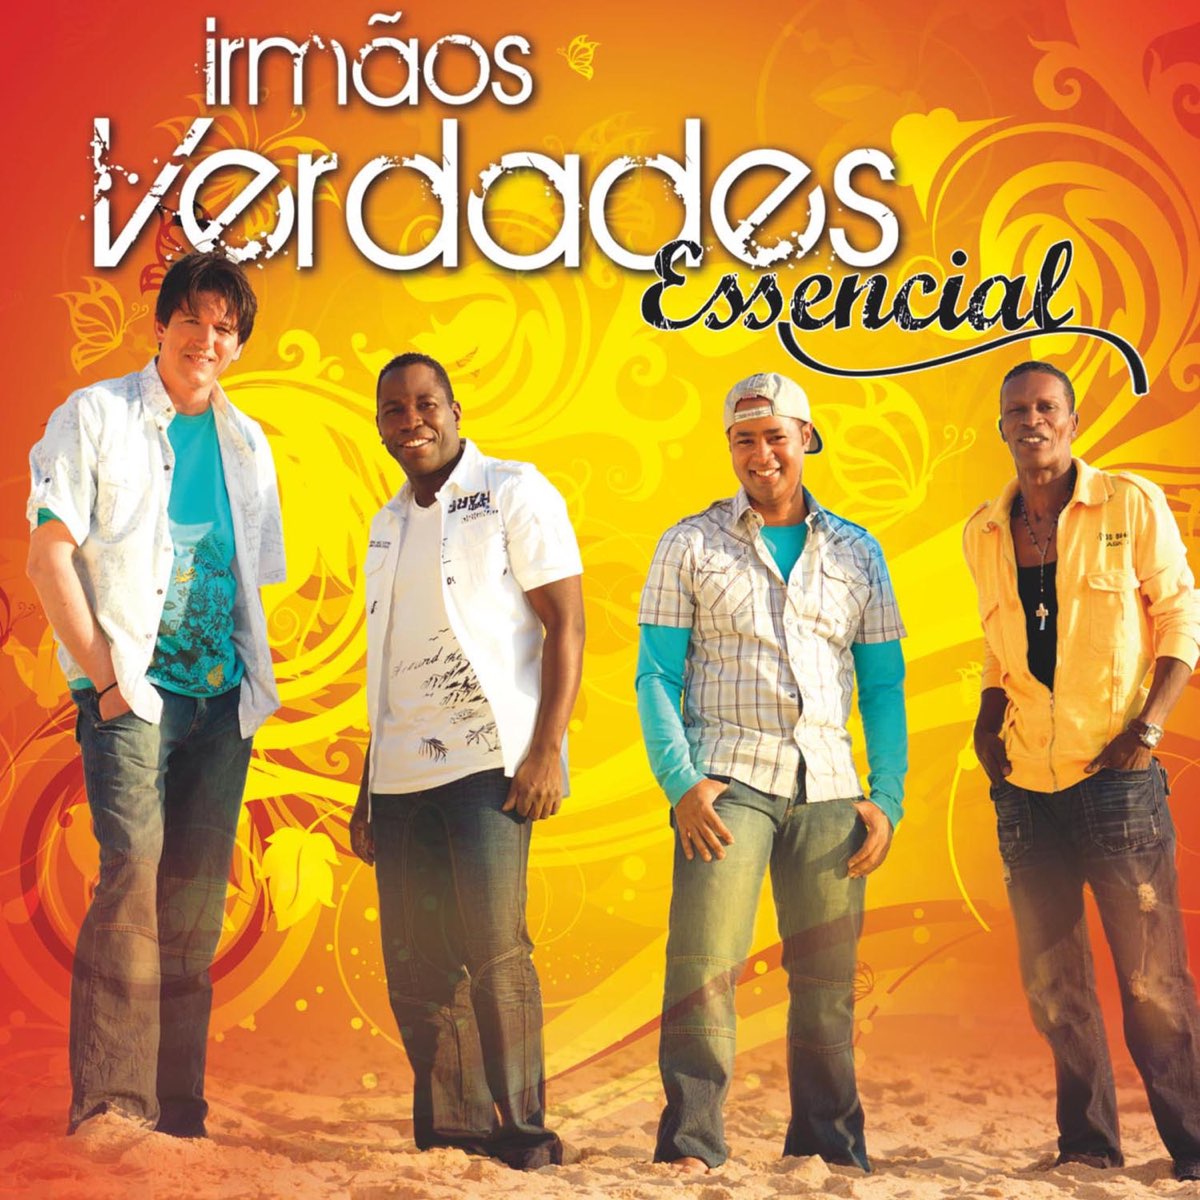 Irmãos Verdades (Essencial) by Irmãos Verdades | Album